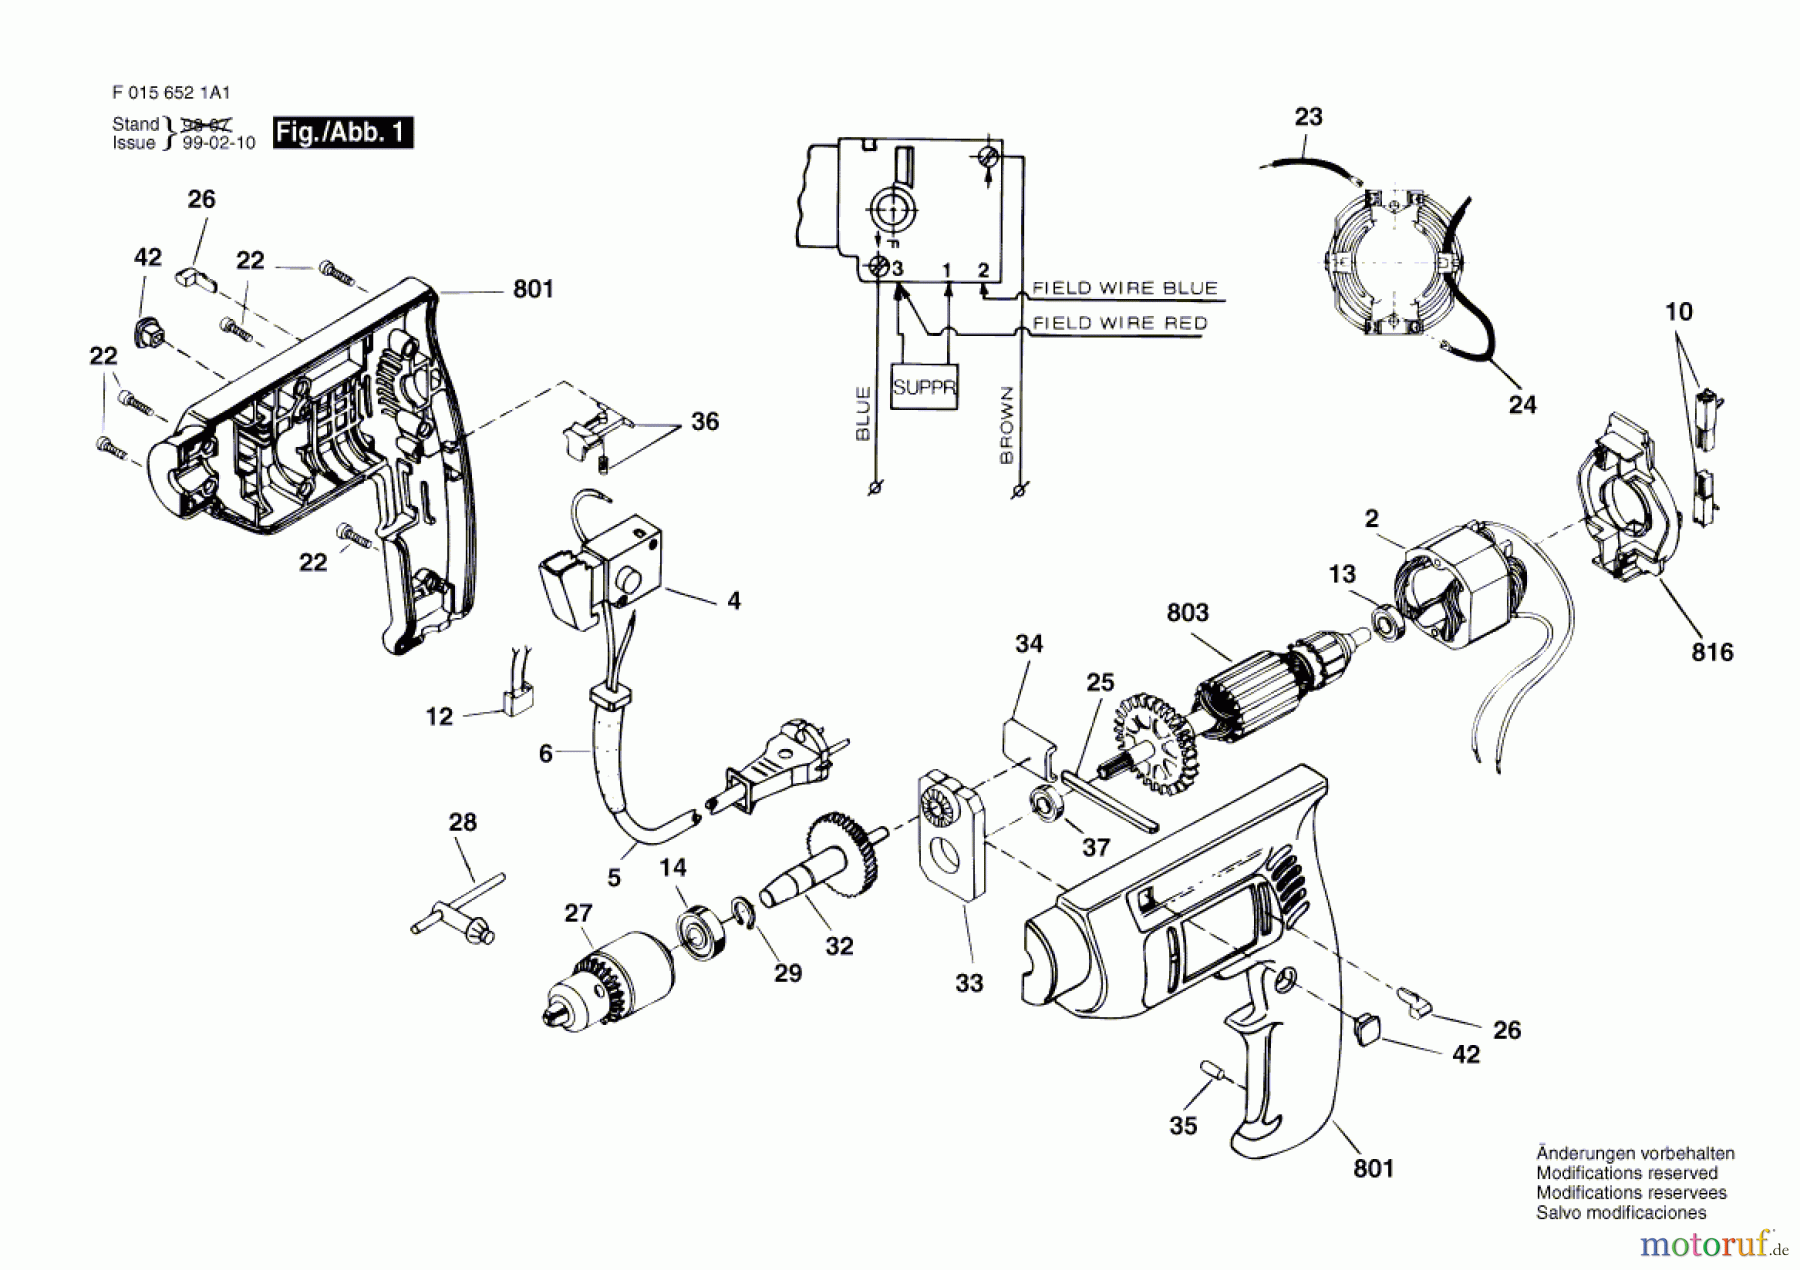  Bosch Werkzeug Schlagbohrmaschine 6521 H1 Seite 1